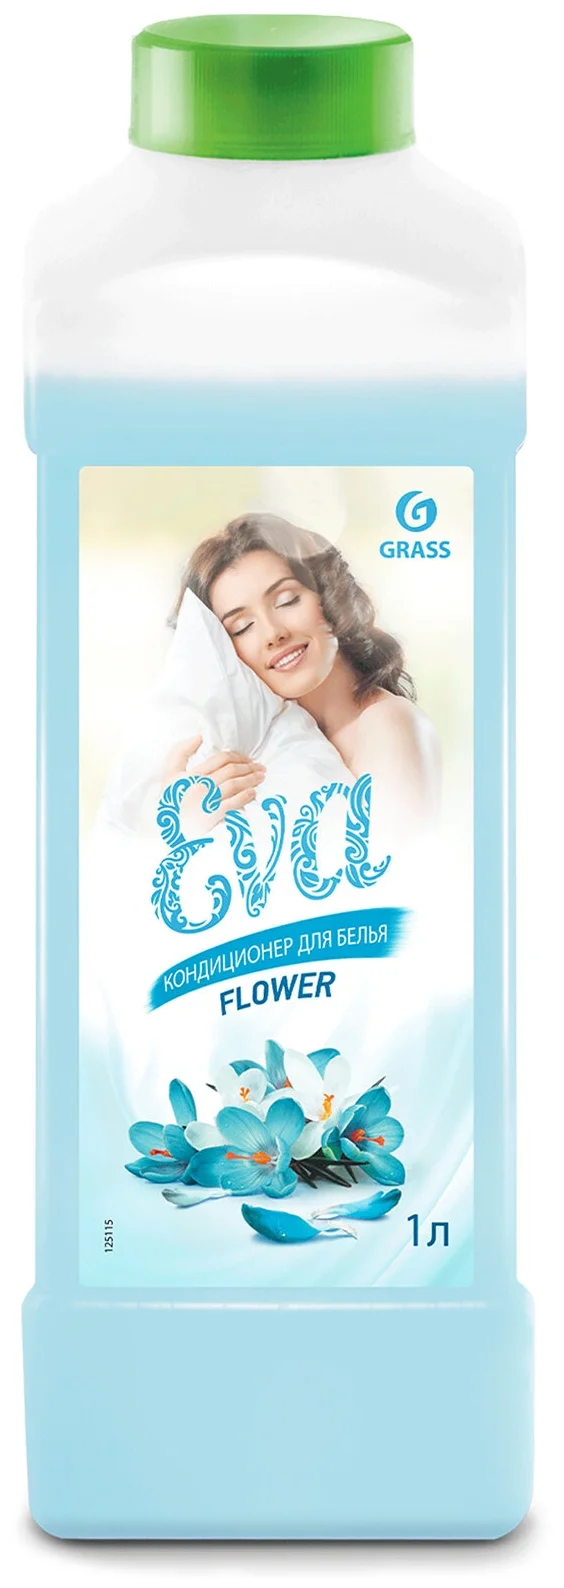 Grass EVA Flower - назначение: для шерсти и шелка, для нижнего белья, для хлопковых тканей, для цветных тканей, для синтетических тканей, для белых и светлых тканей, для черных и темных тканей